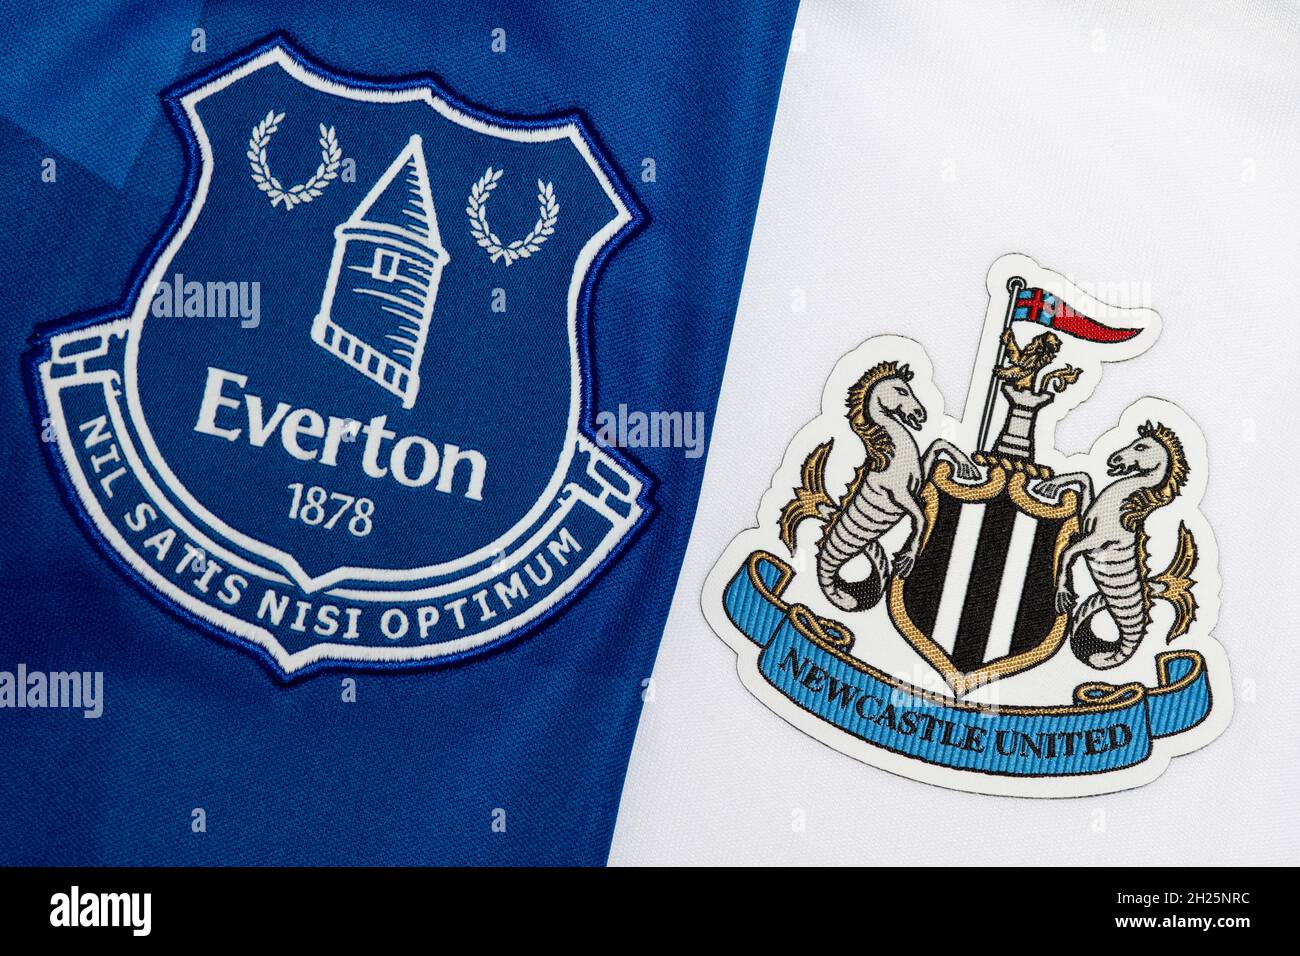 Primer plano de Everton & Newcastle United Club Crest Foto de stock